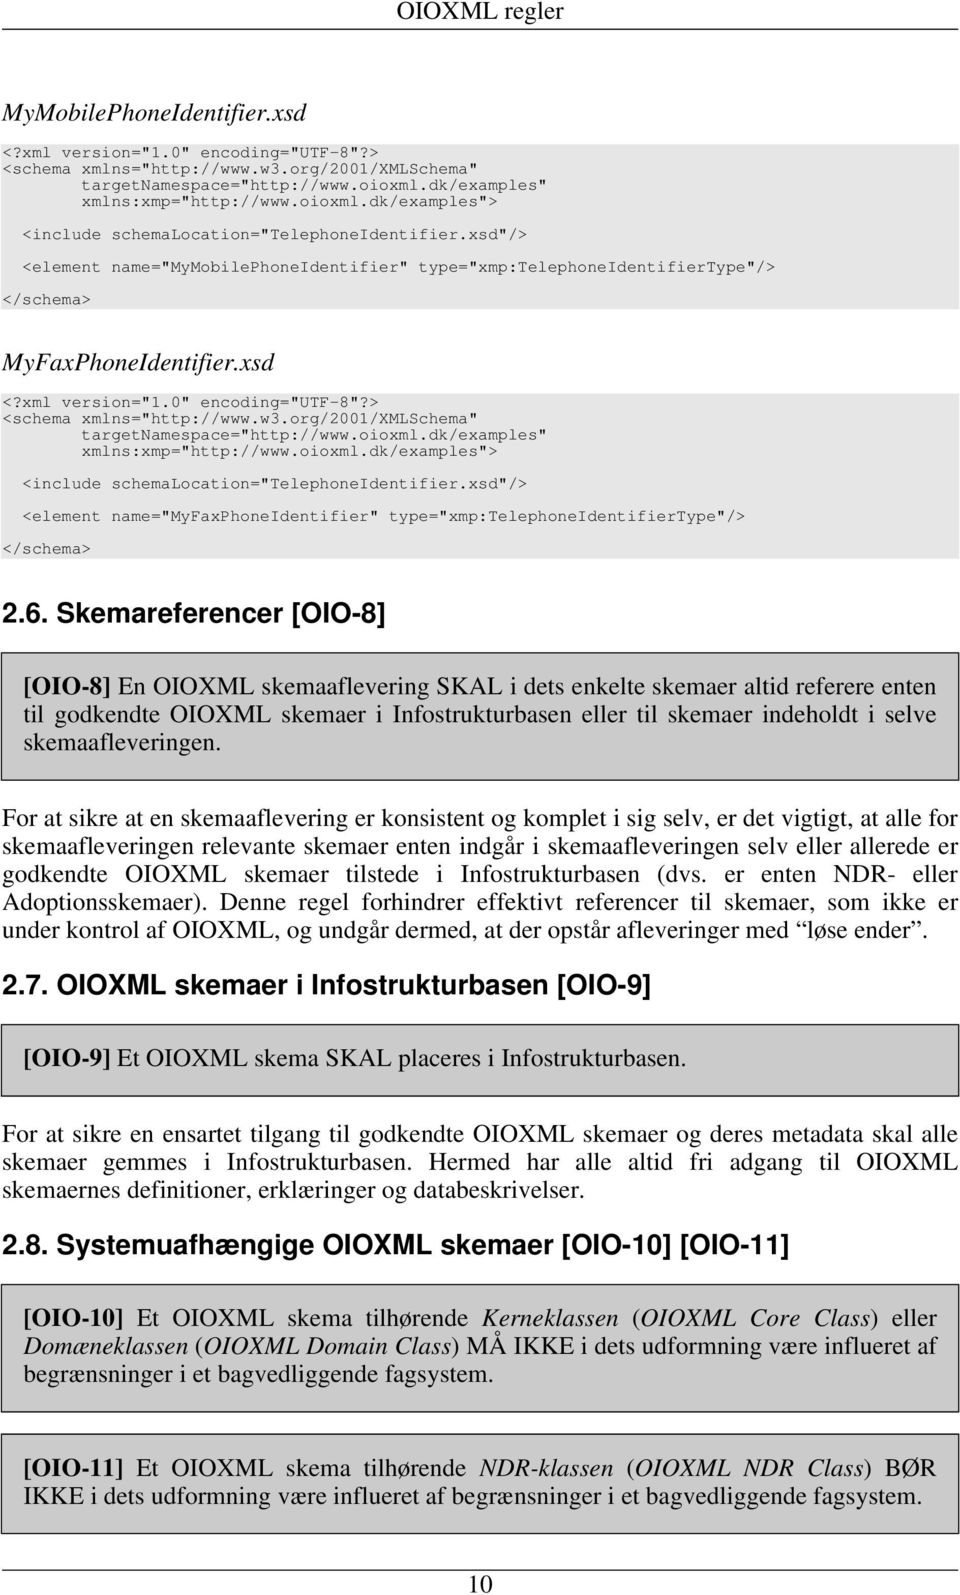 xml version="1.0" encoding="utf-8"?> <schema xmlns="http://www.w3.org/2001/xmlschema" targetnamespace="http://www.oioxml.dk/examples" xmlns:xmp="http://www.oioxml.dk/examples"> <include schemalocation="telephoneidentifier.